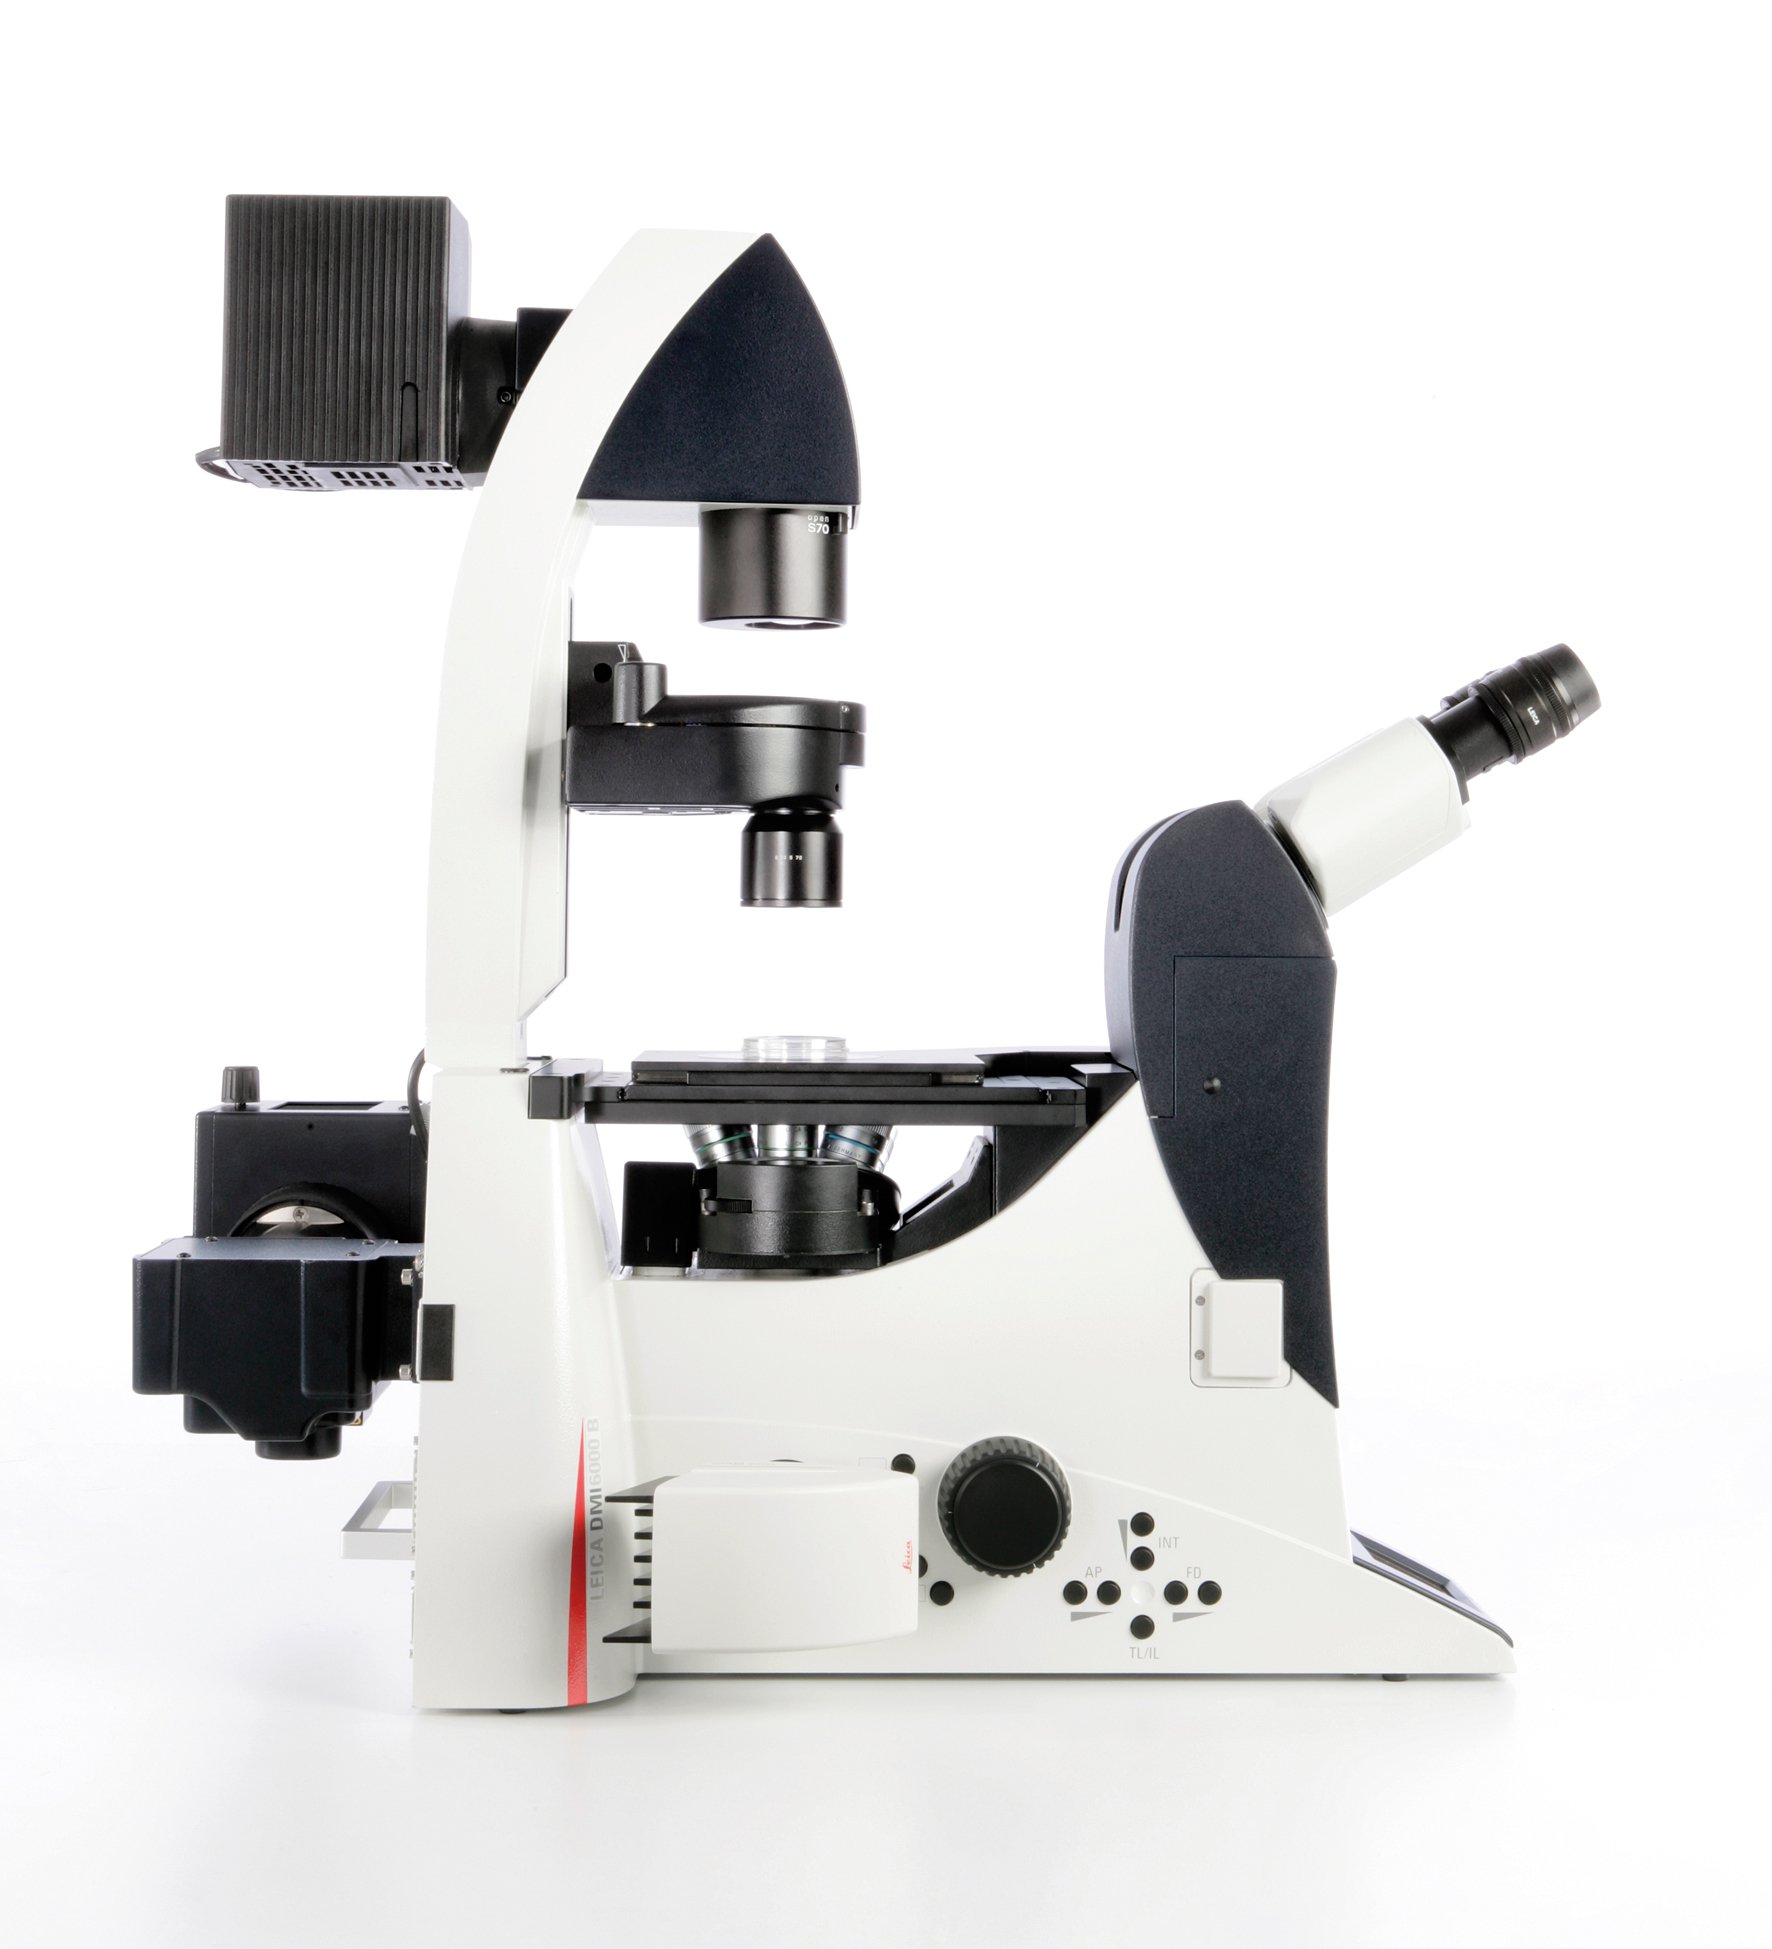 바이오메디컬 연구용 완전 자동식 도립현미경 Leica DMI6000 B